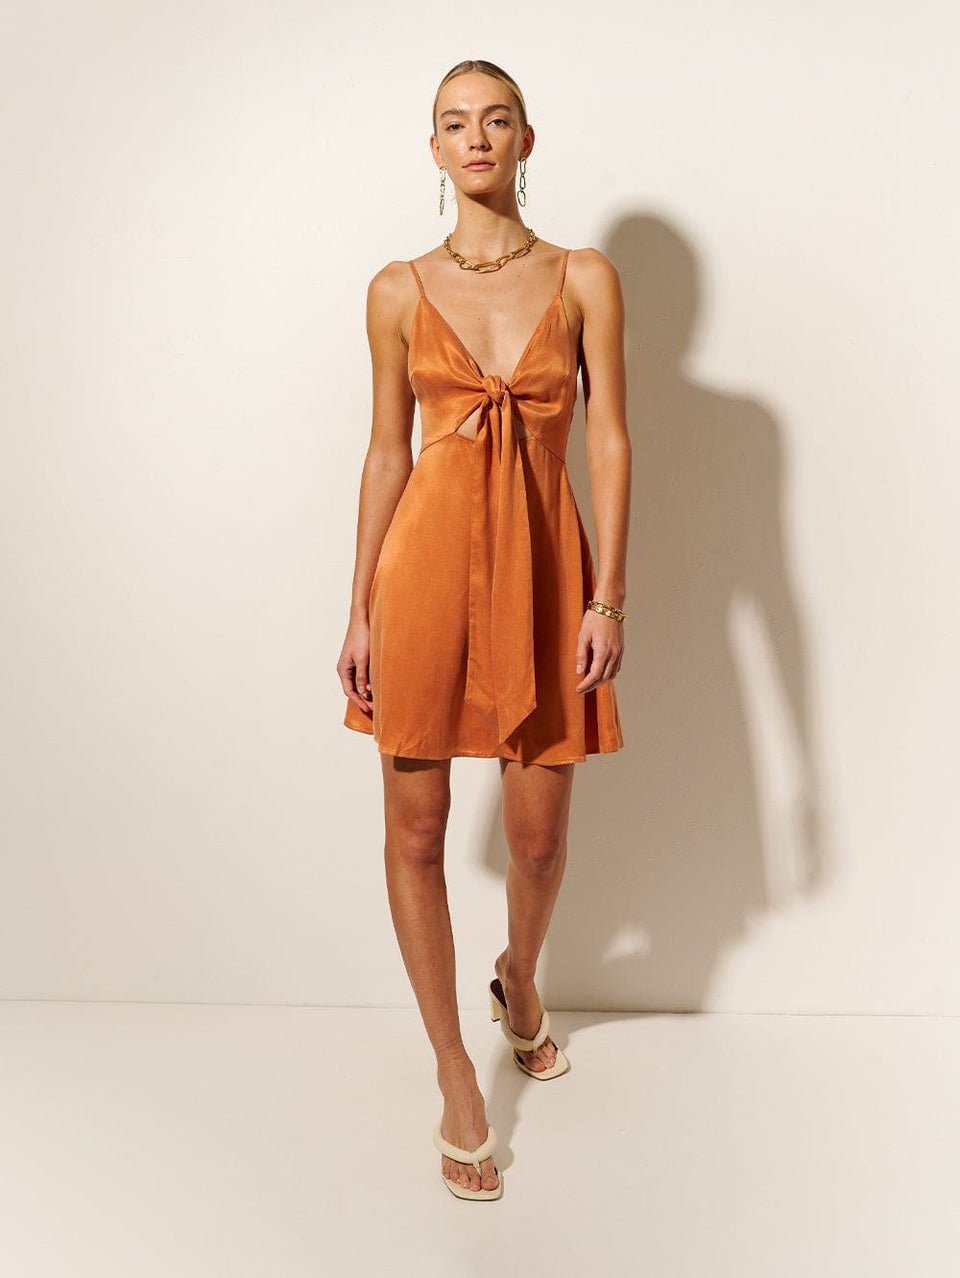 KIVARI Bianca Tie Front Mini Dress | Model wears Orange Tie Front Mini Dress